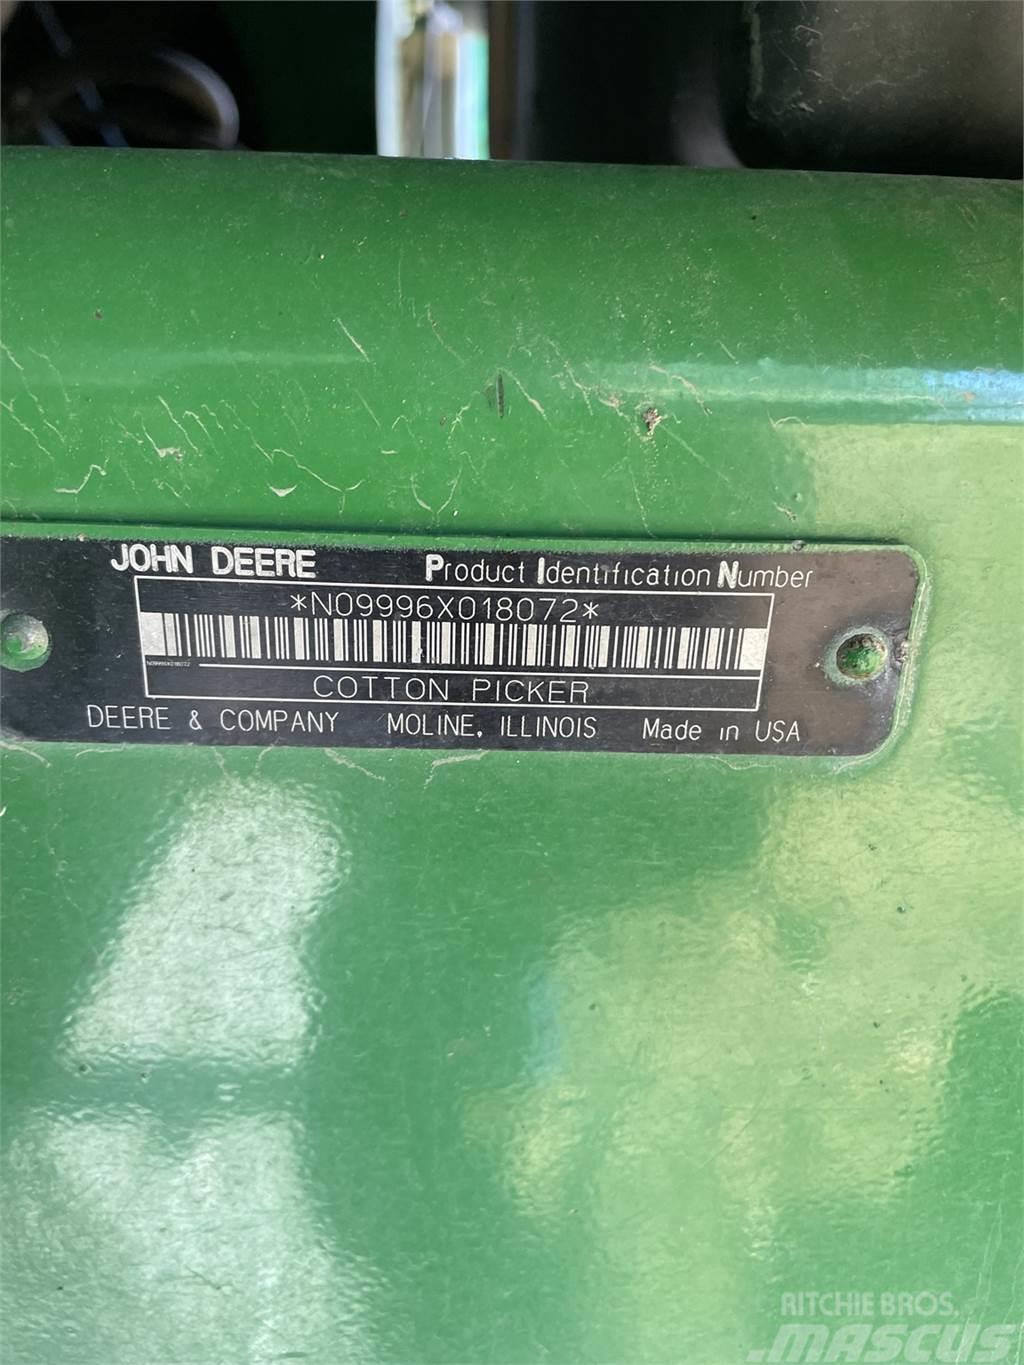 John Deere 9996 Druga oprema za žetev